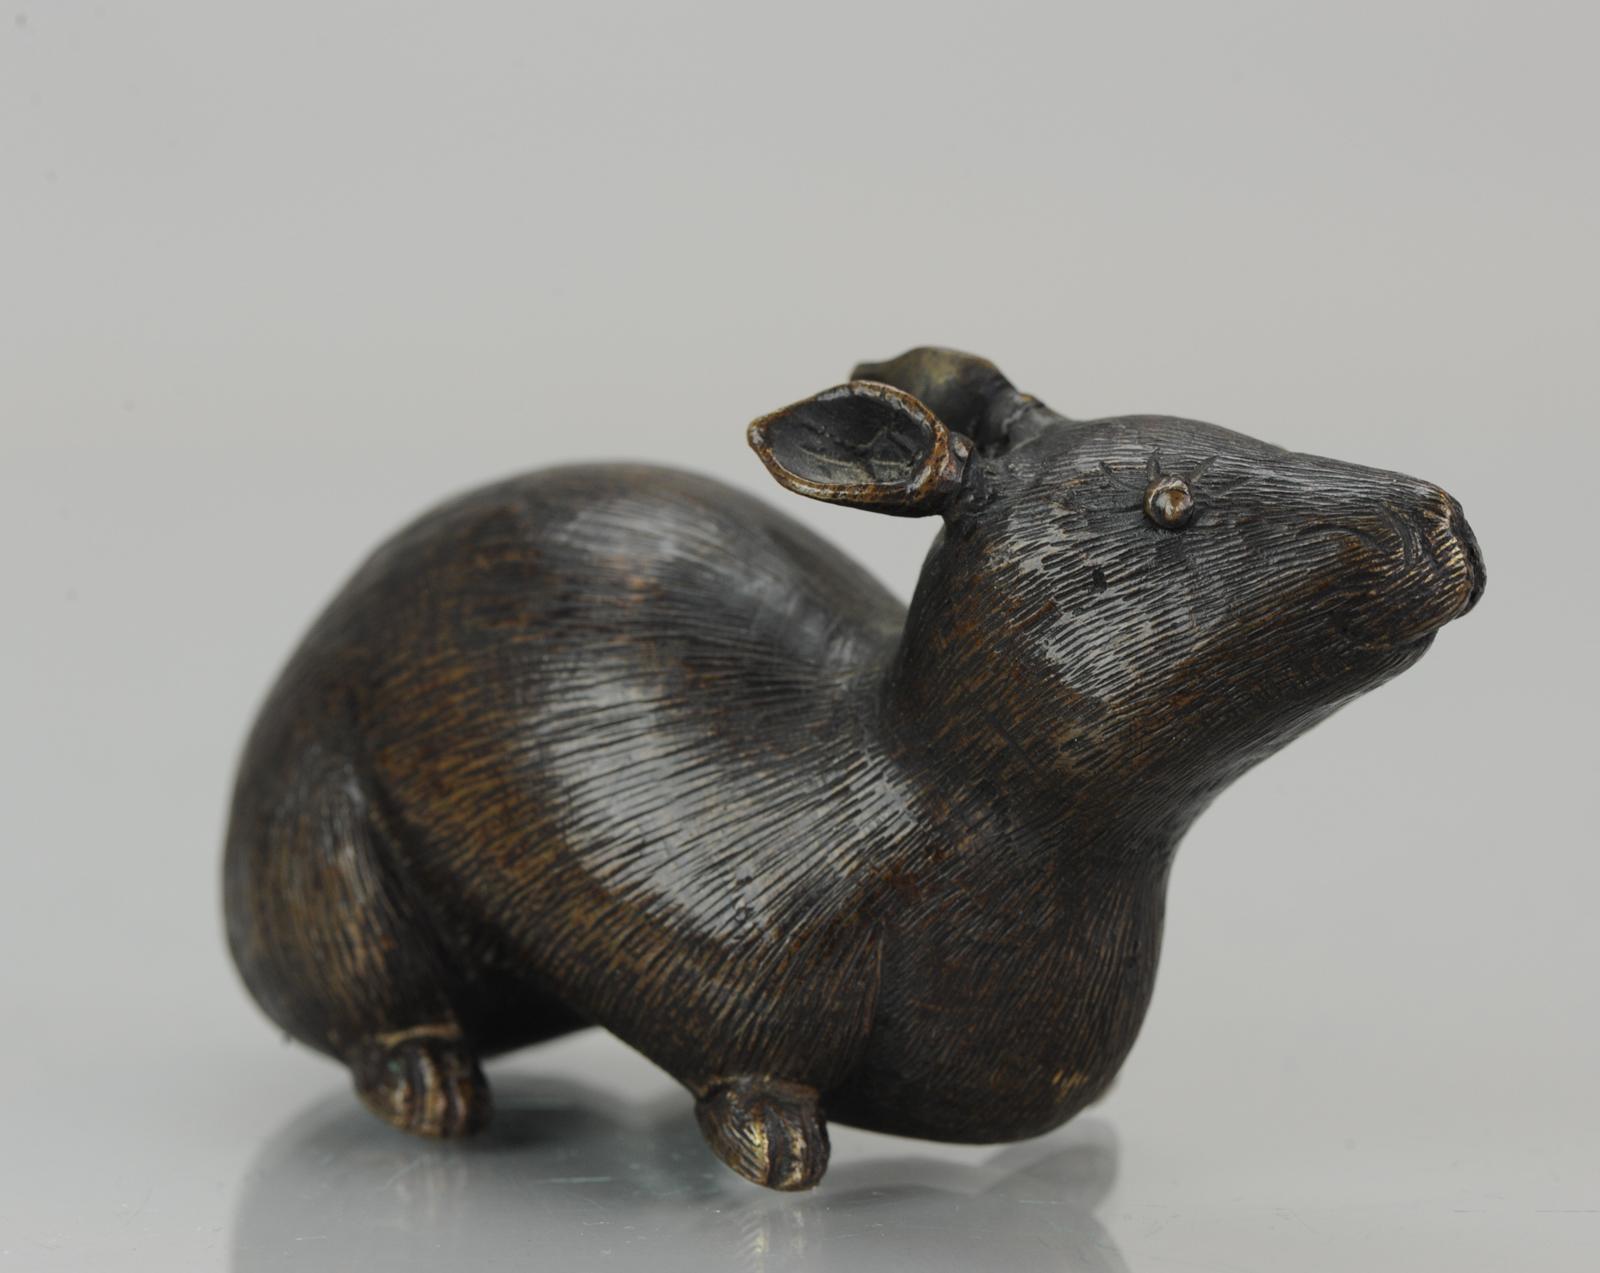 Schön gemachtes Artefakt/Okimono einer Ratte. Aus Bronze mit brauner Patina, eine Ratte darstellend.

Okimono (置物, oki-mono) ist ein japanischer Begriff, der so viel wie 